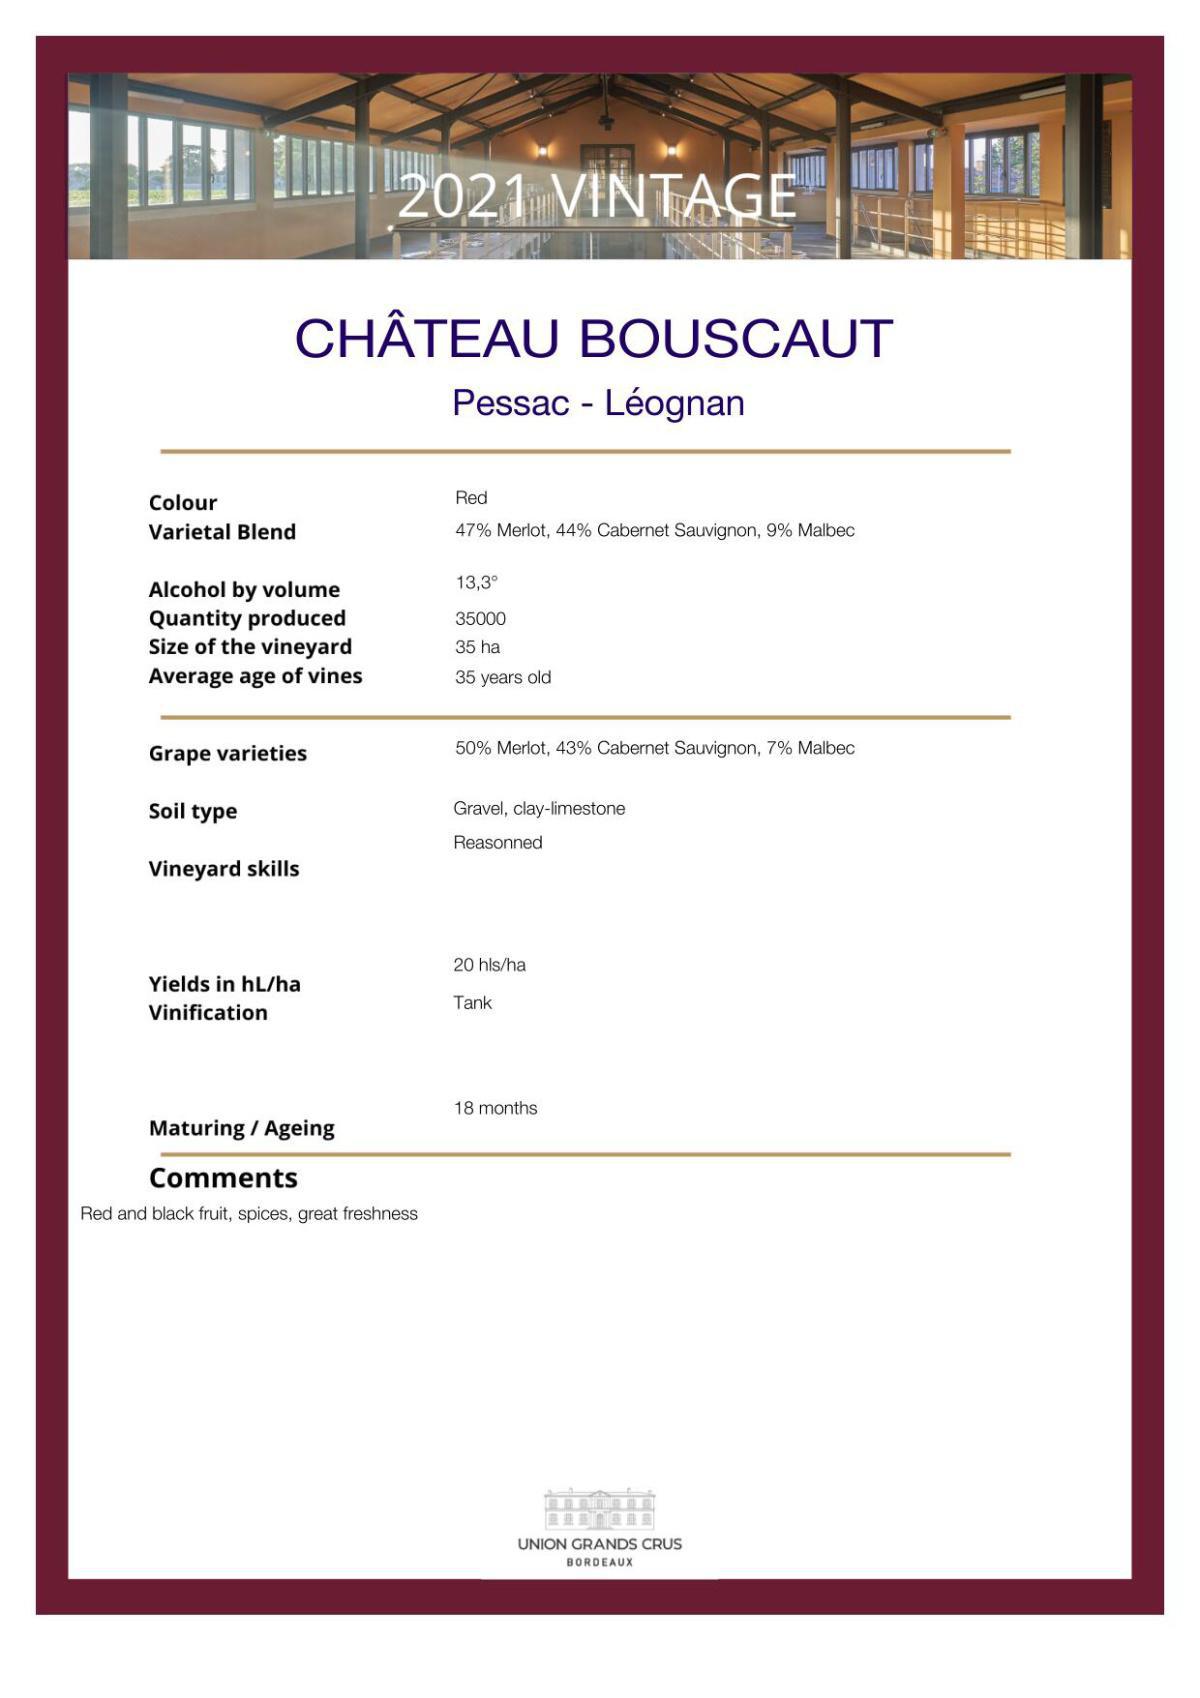 Château Bouscaut - Red